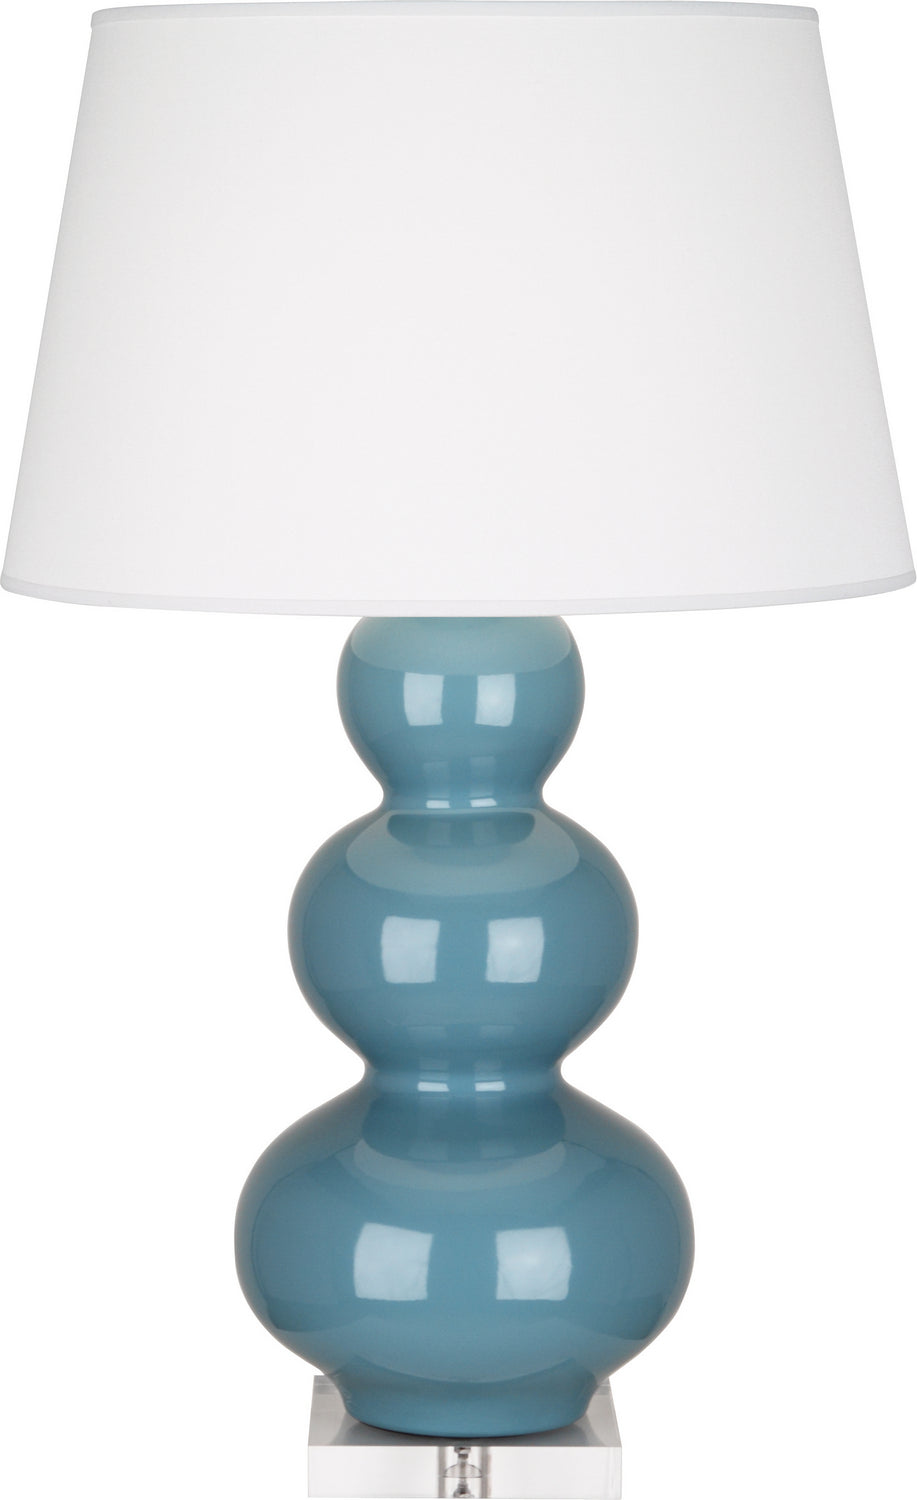 Robert Abbey - One Light Table Lamp - Triple Gourd - Steel Blue Glazed Ceramic w/Lucite Base- Union Lighting Luminaires Decor